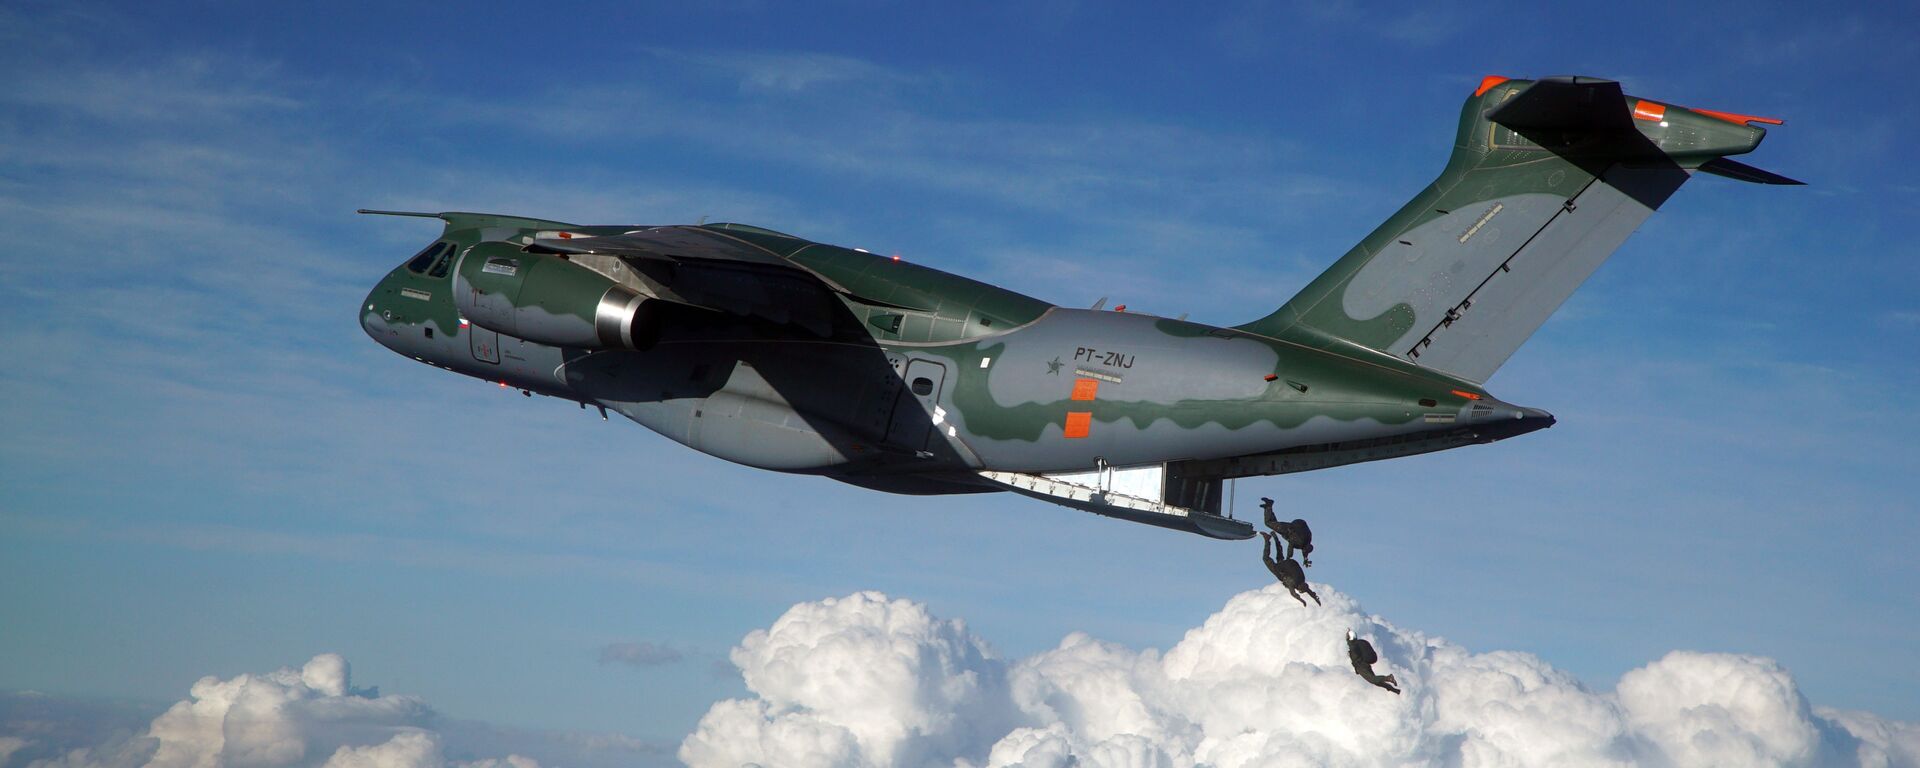 Avião KC-390, cargueiro militar fabricado pela Embraer - Sputnik Brasil, 1920, 01.09.2022